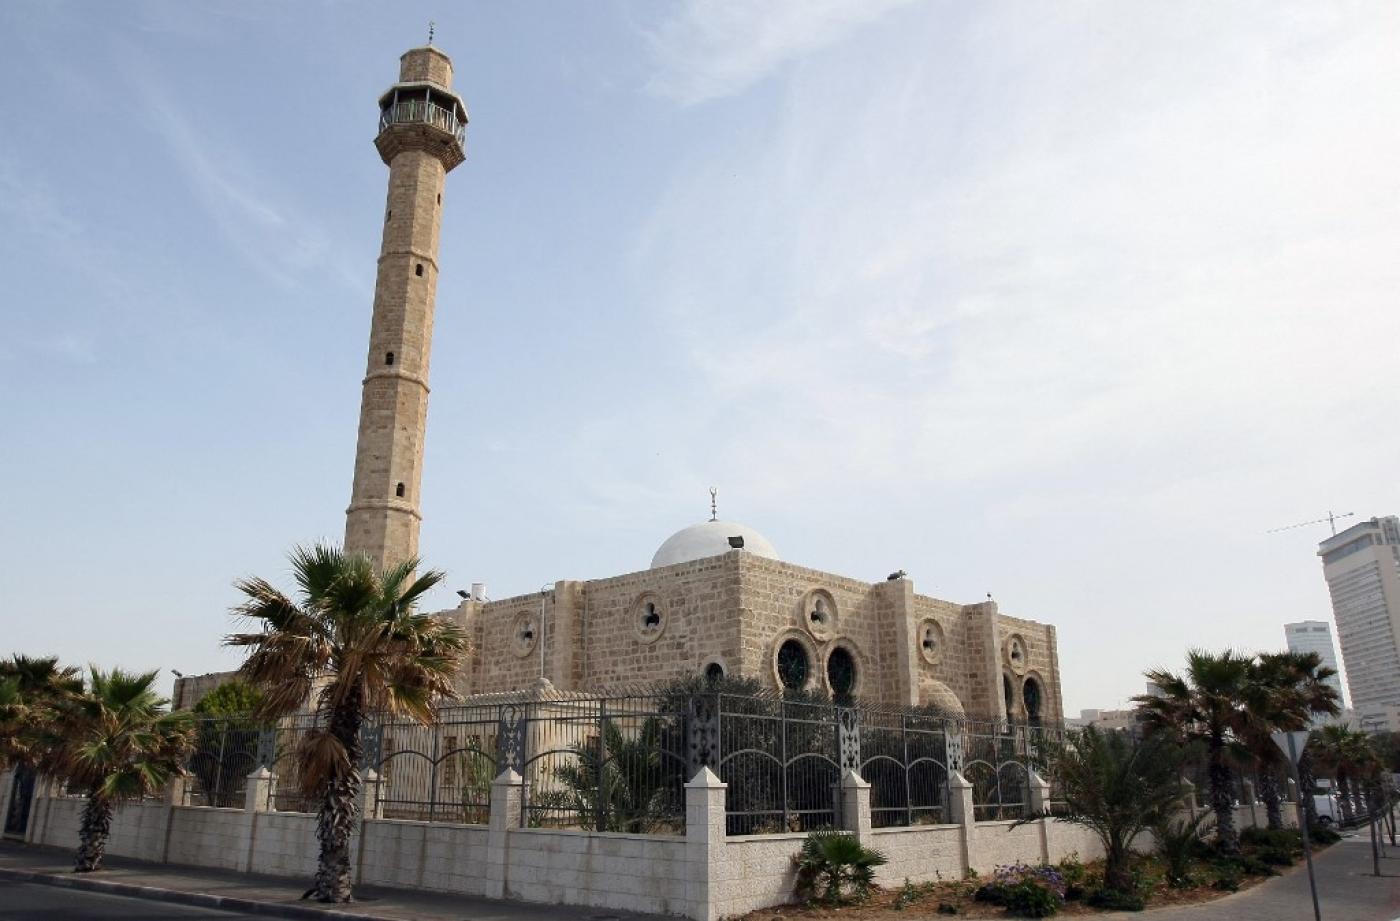 Landmark Jaffa mosque vandalised overnight